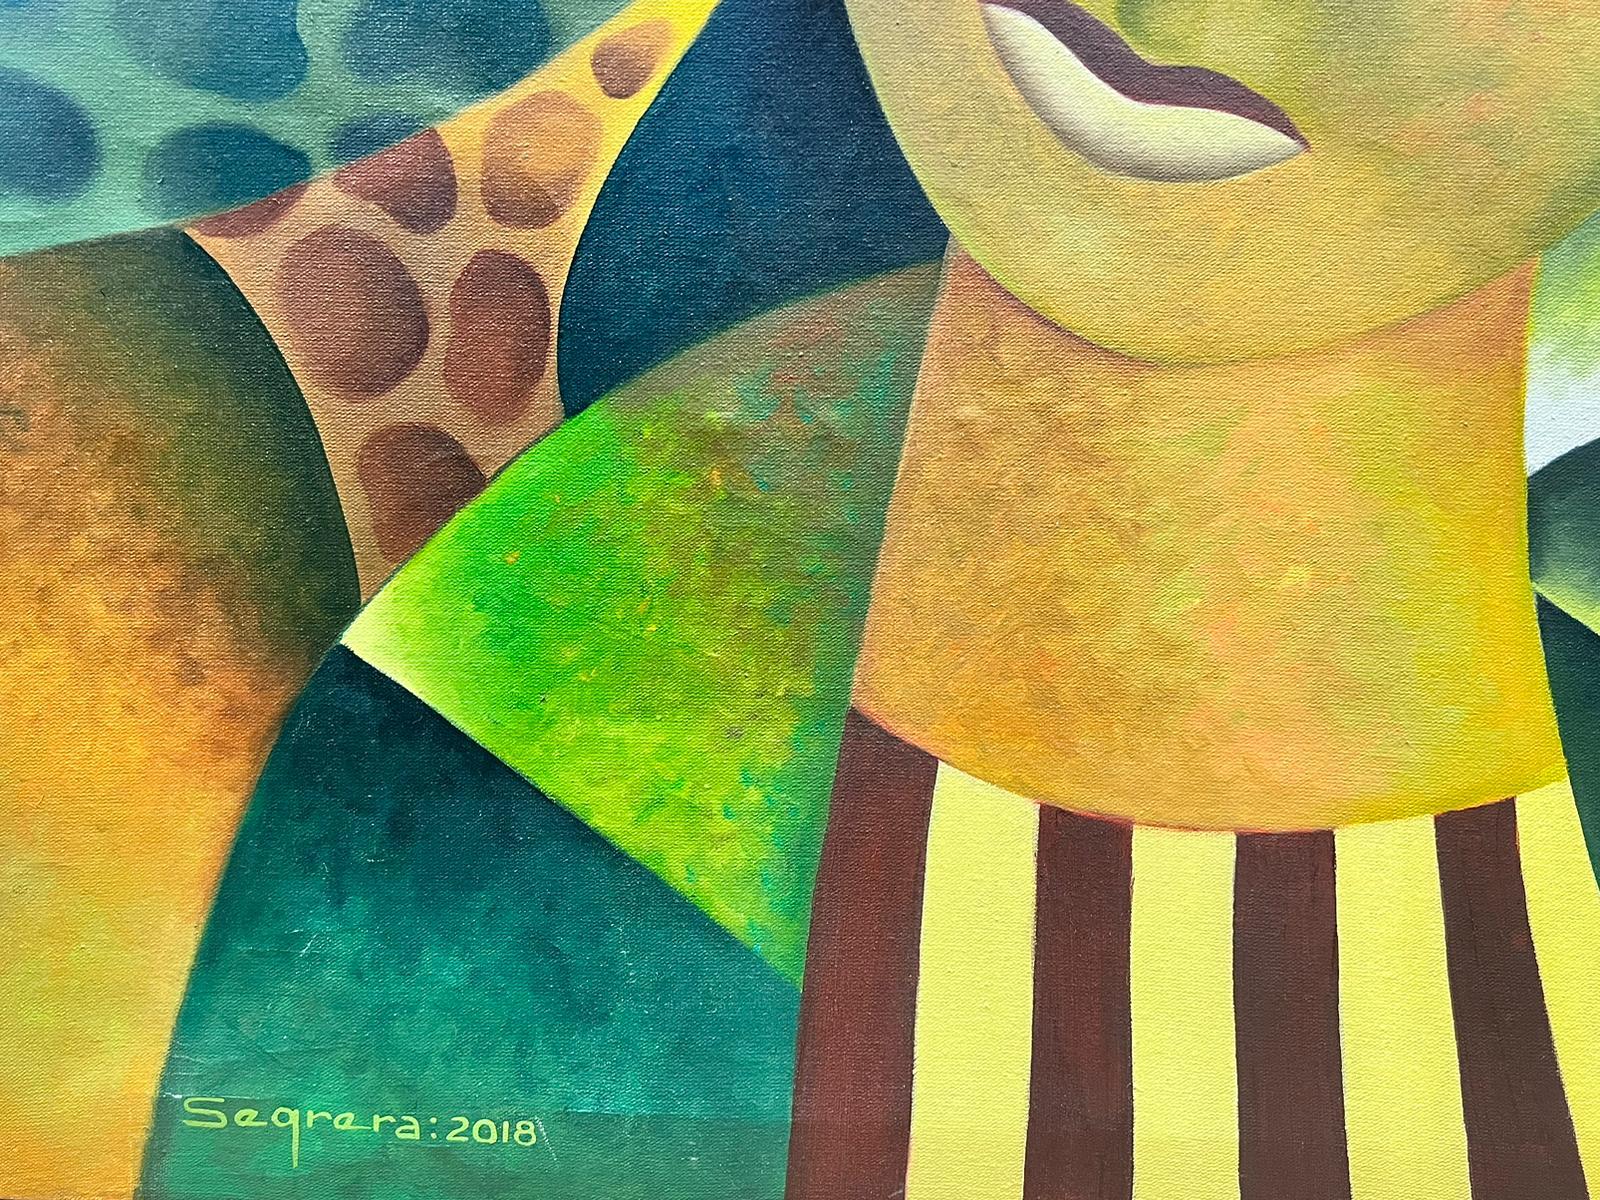 Clemente Segrera (cubain né en 1951)
peinture acrylique sur toile signée, non encadrée
daté de 2018
toile : 31 x 43 pouces
provenance : collection privée, Londres
état : très bon et sain